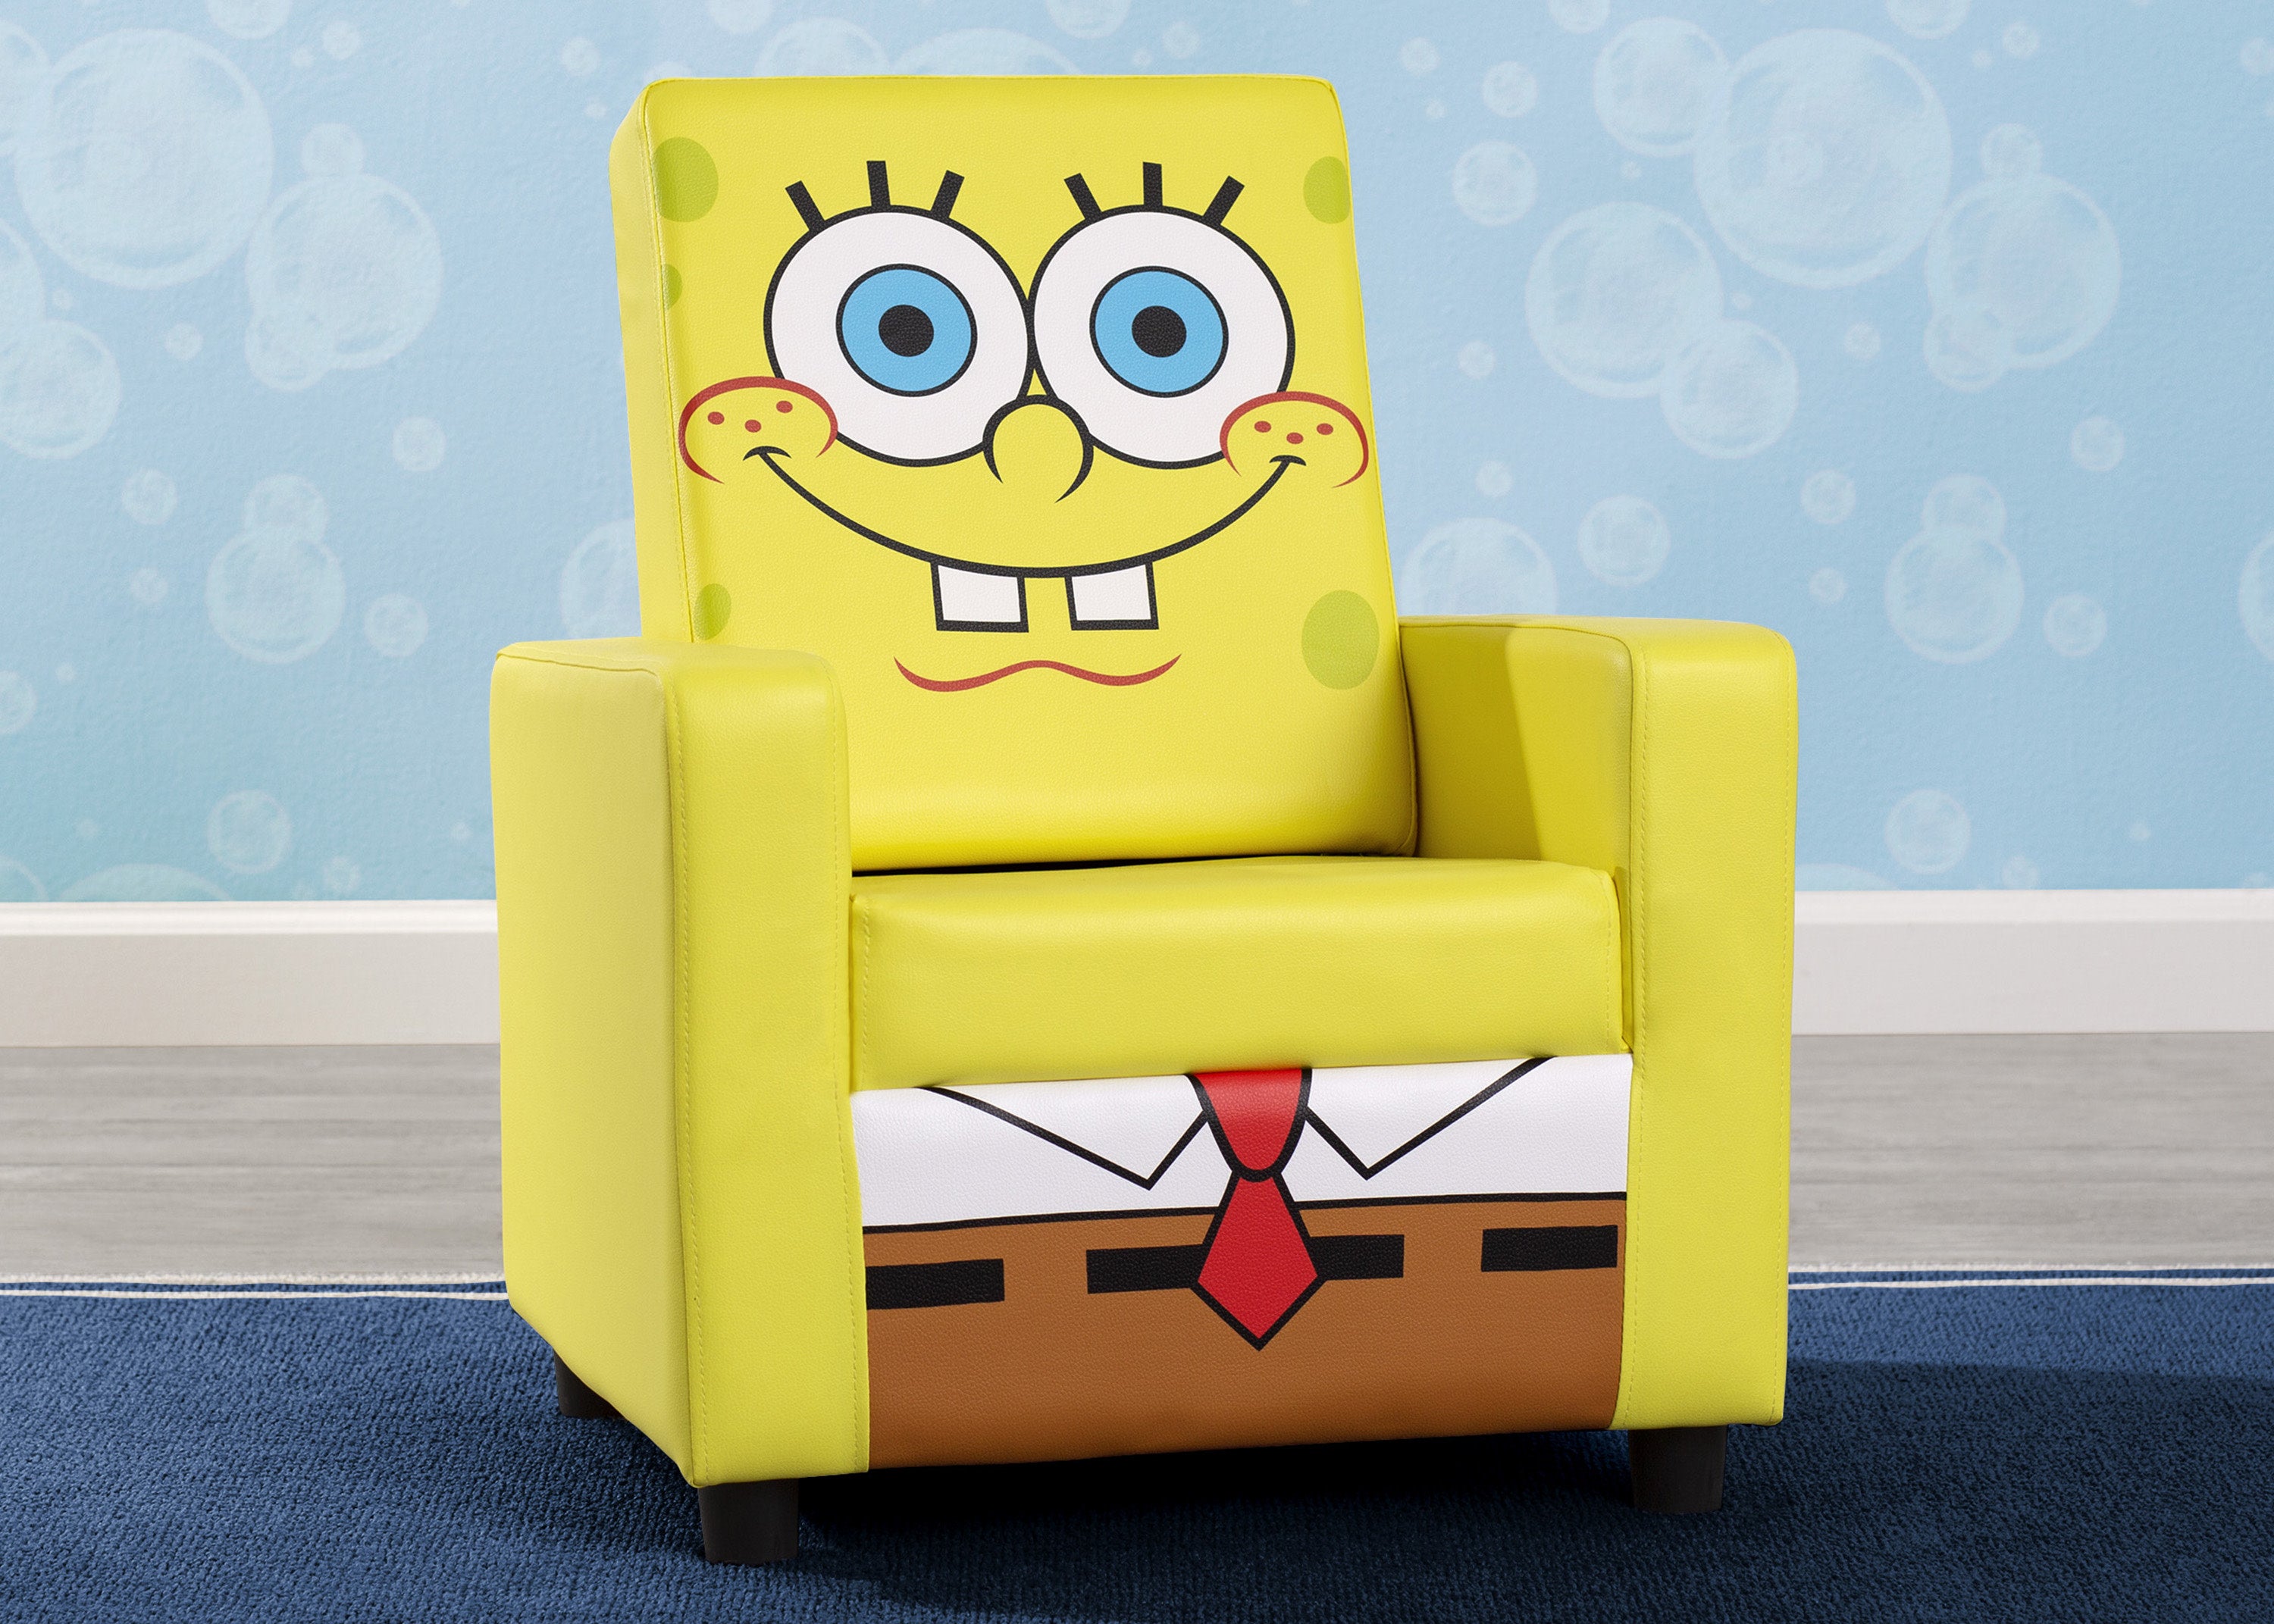 Pillow Sitting Chair, Super Soft Pillow Chair, Cartoon Pillow Chair